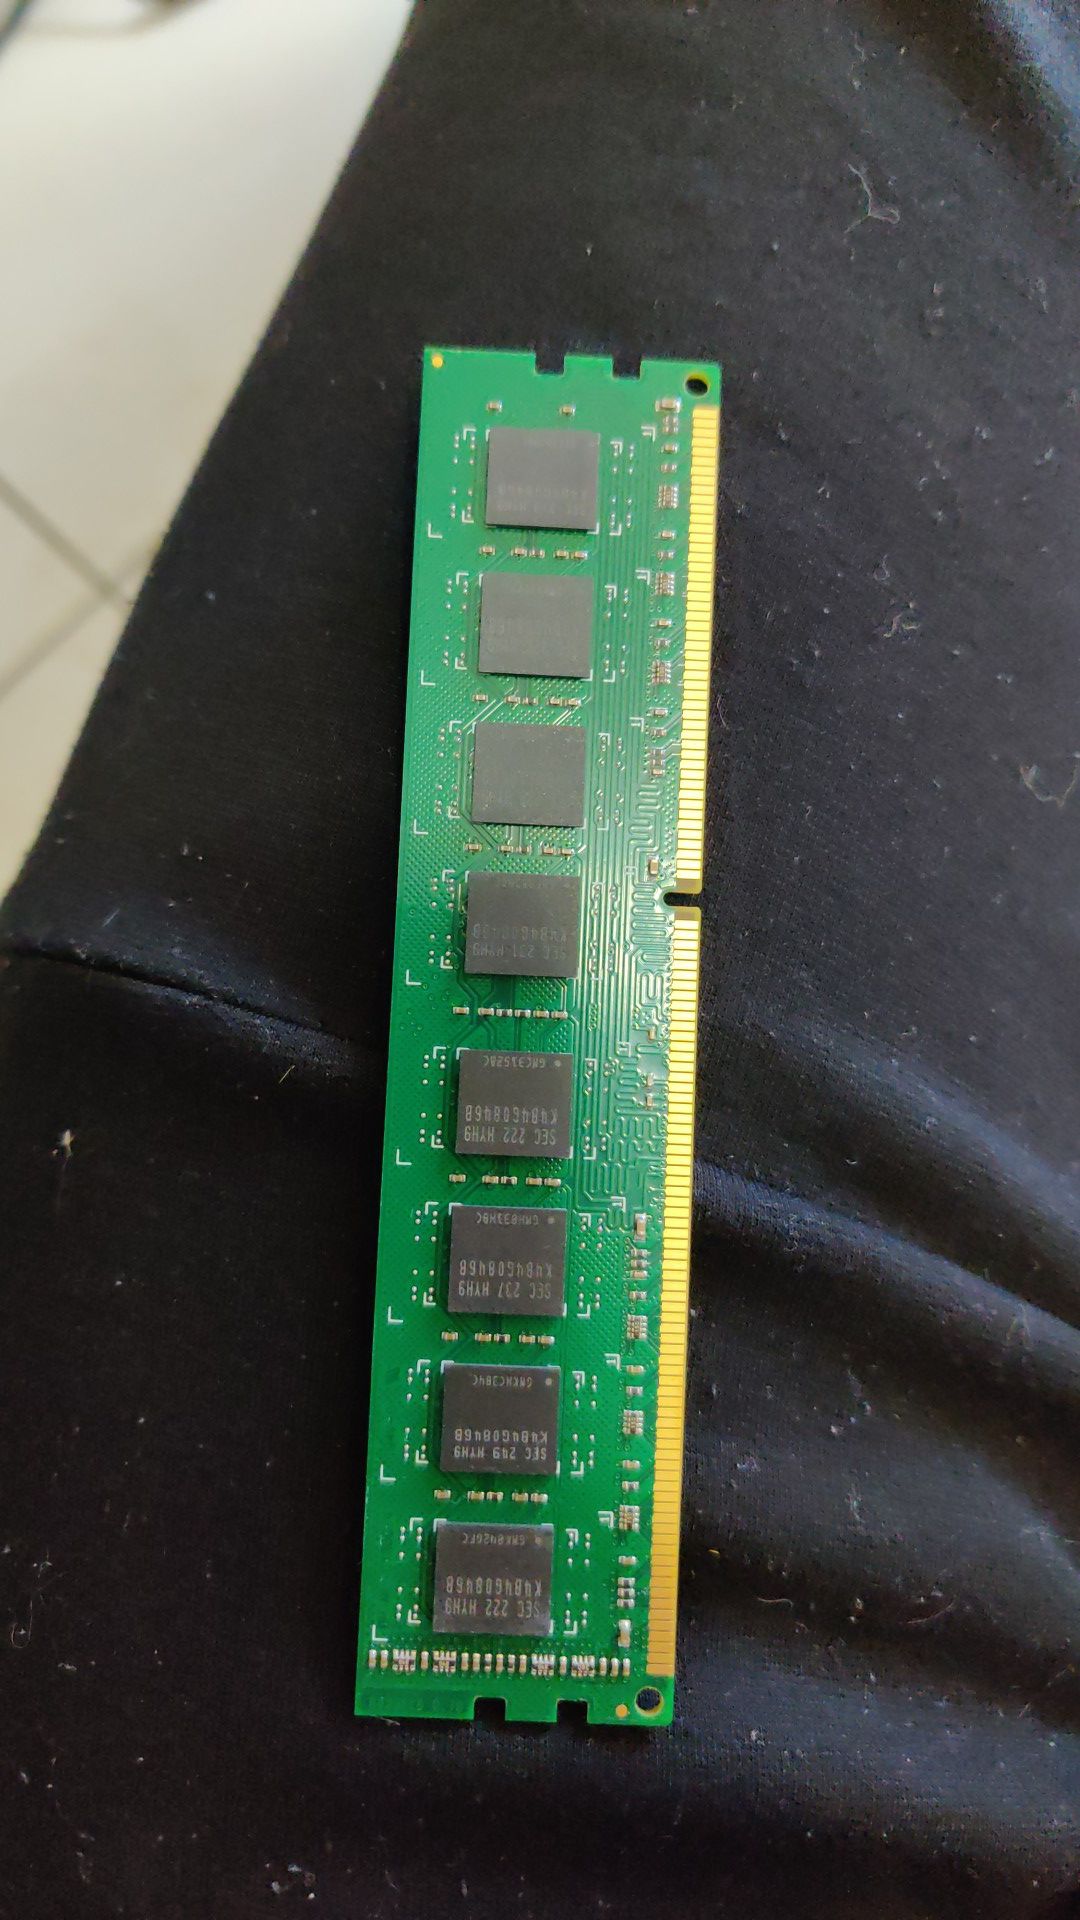 DDR3 RAM 8G 1600